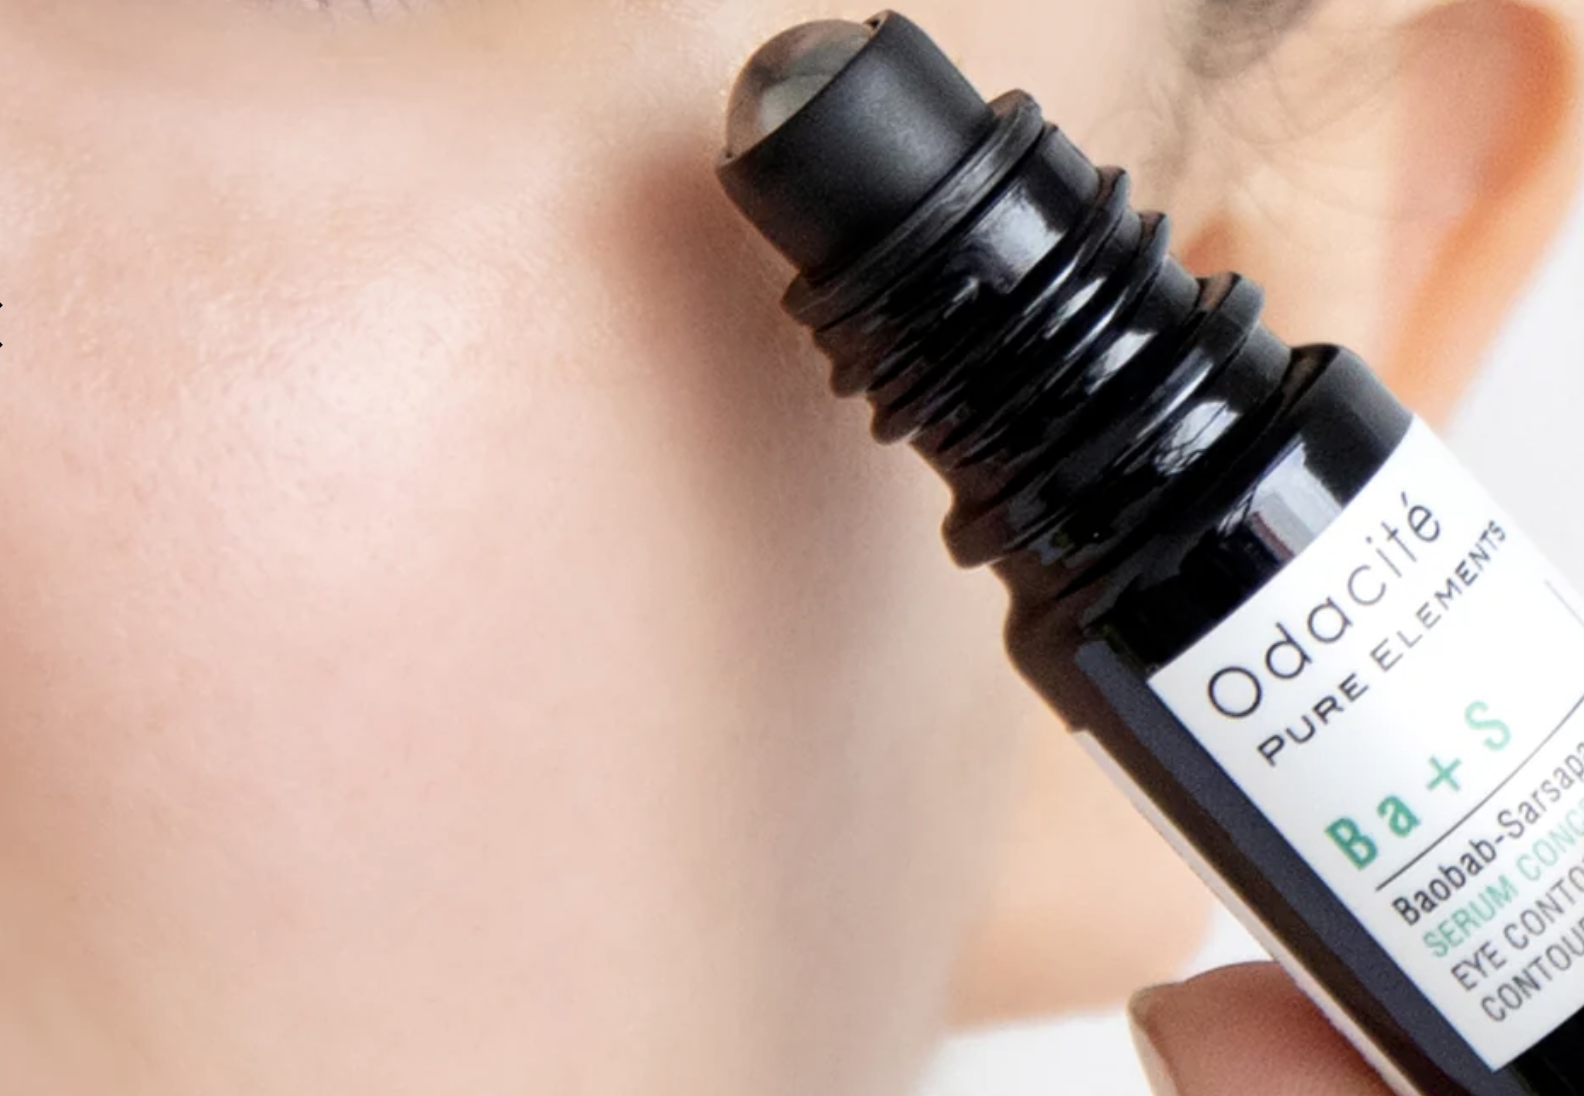 natural eye cream odacite eye contour serum concentrate